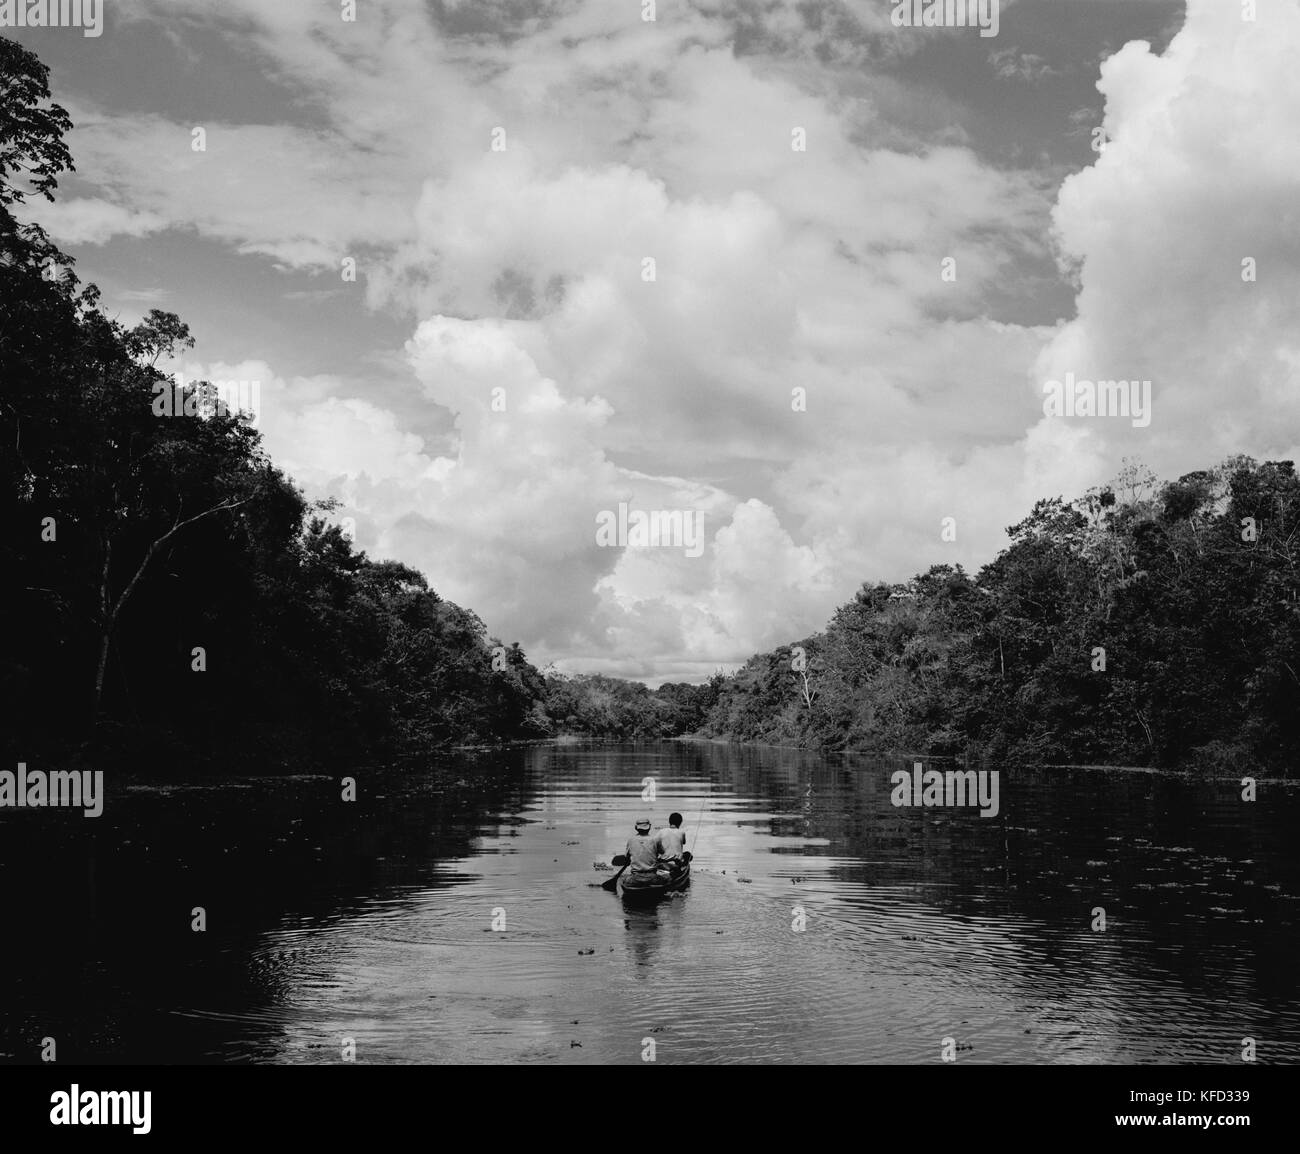 Canoa a vela immagini e fotografie stock ad alta risoluzione - Alamy